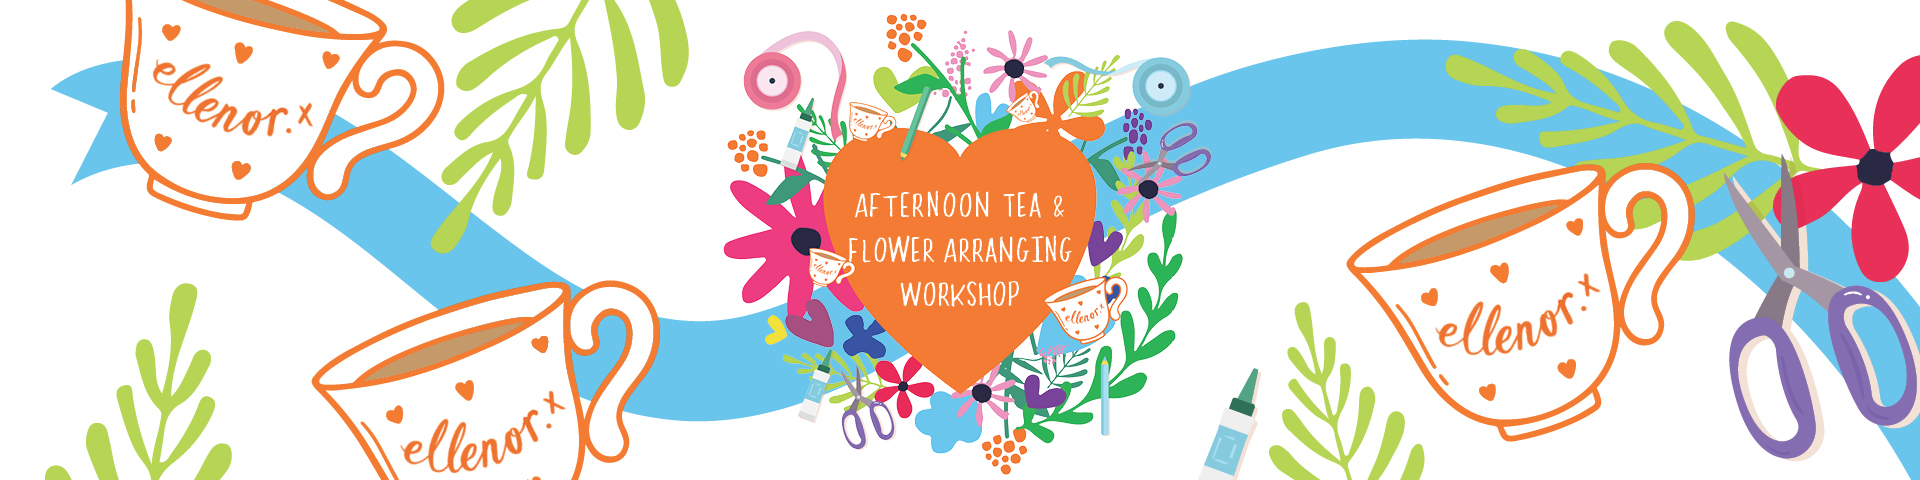 Afternoon Tea & Flower Arranging Workshop WEBSITE BANNER